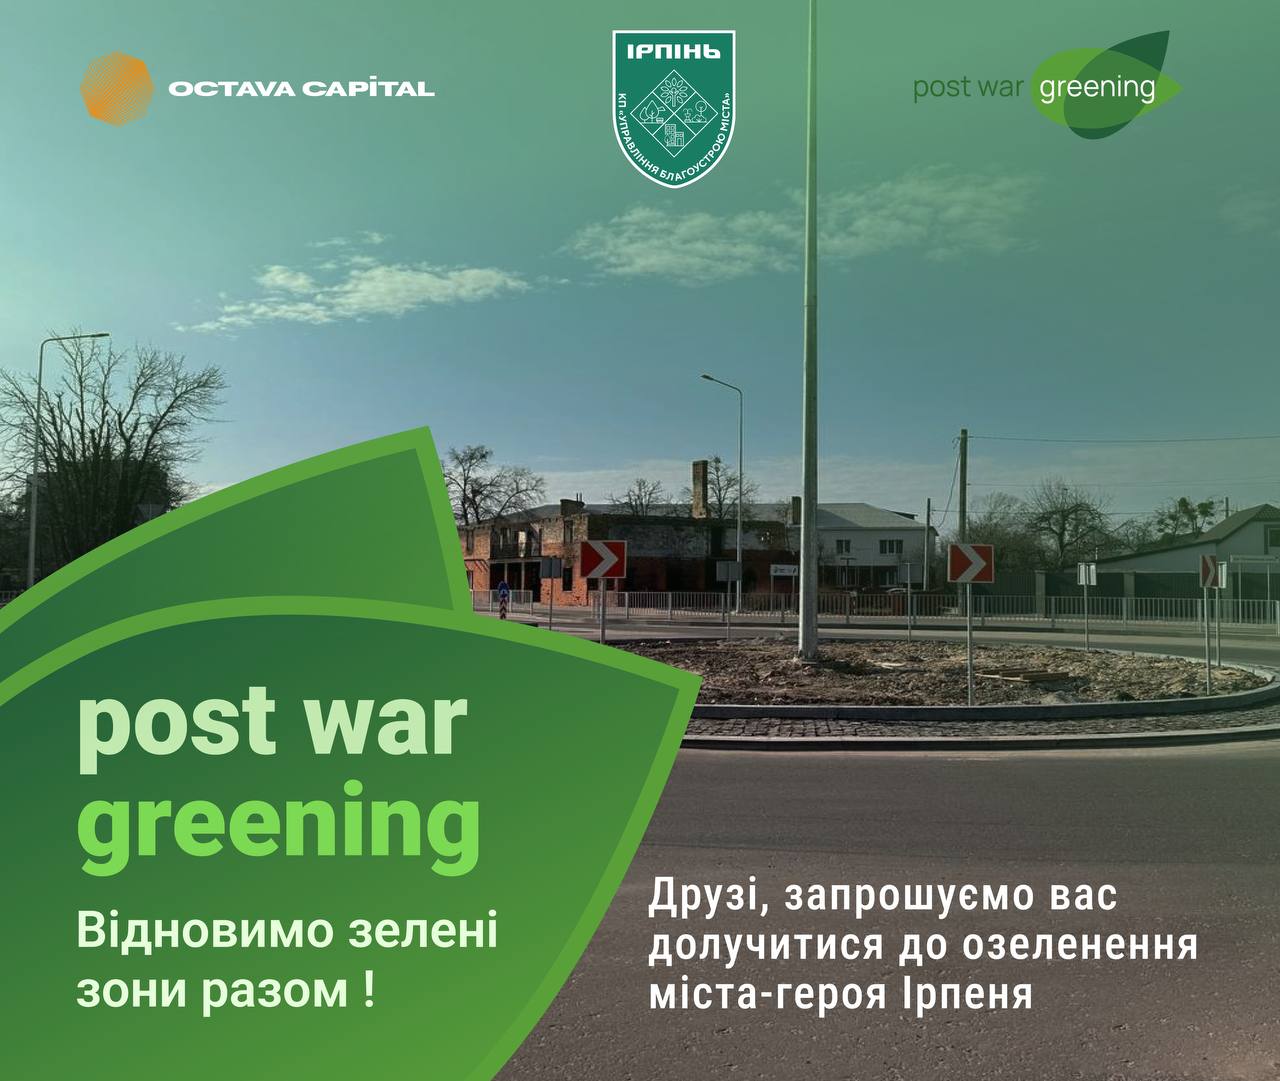 Чергову річницю визволення Ірпеня від російських окупантів відзначать озелененням зелених зон